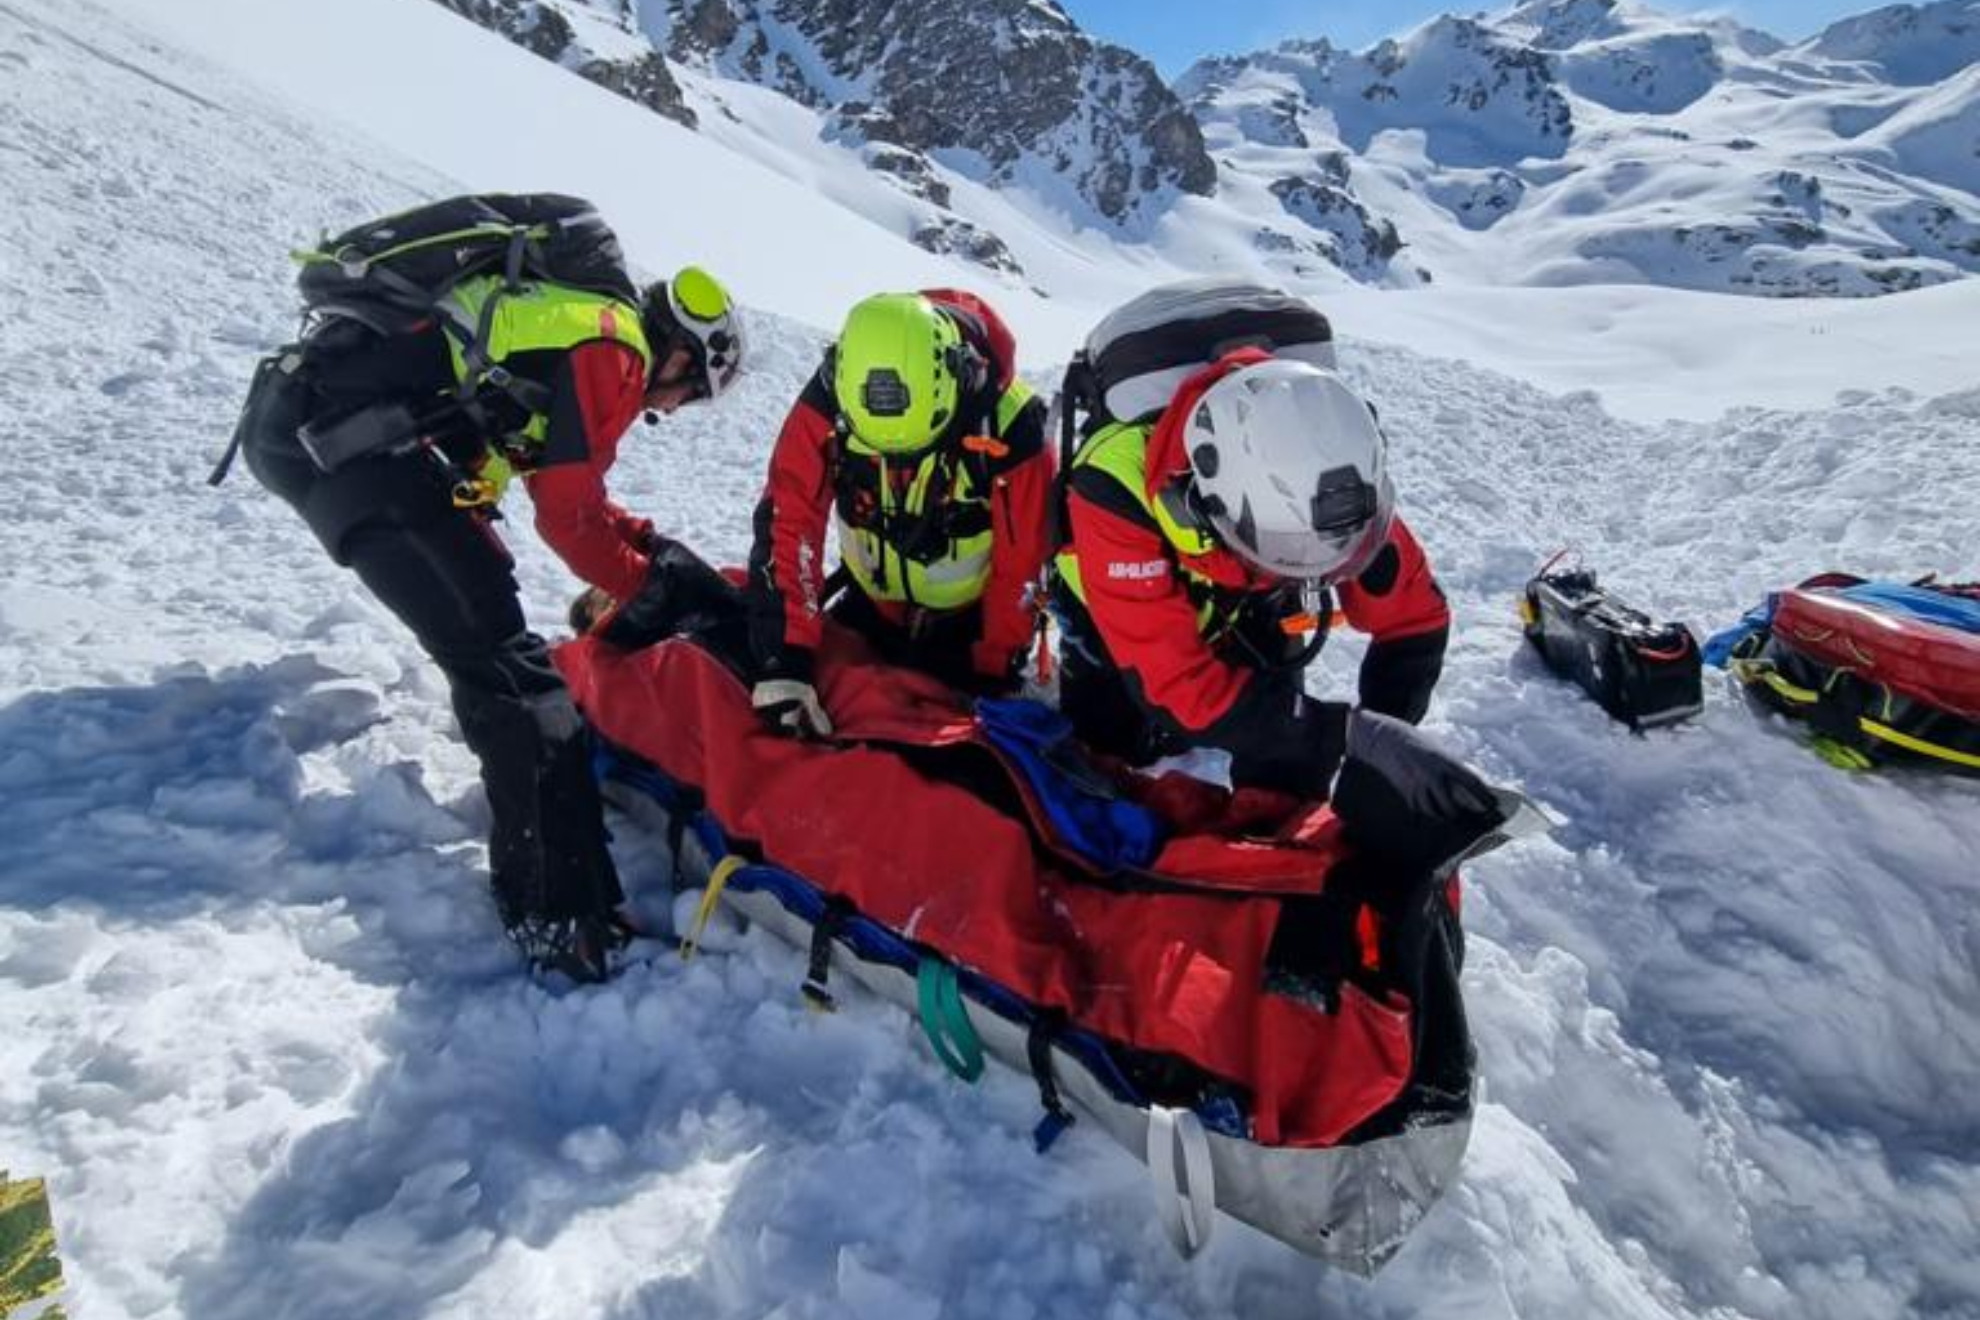 Núria Castán, rider del equipo internacional de Head Snowboards, es rescatada tras quedar enterrada por un alud.